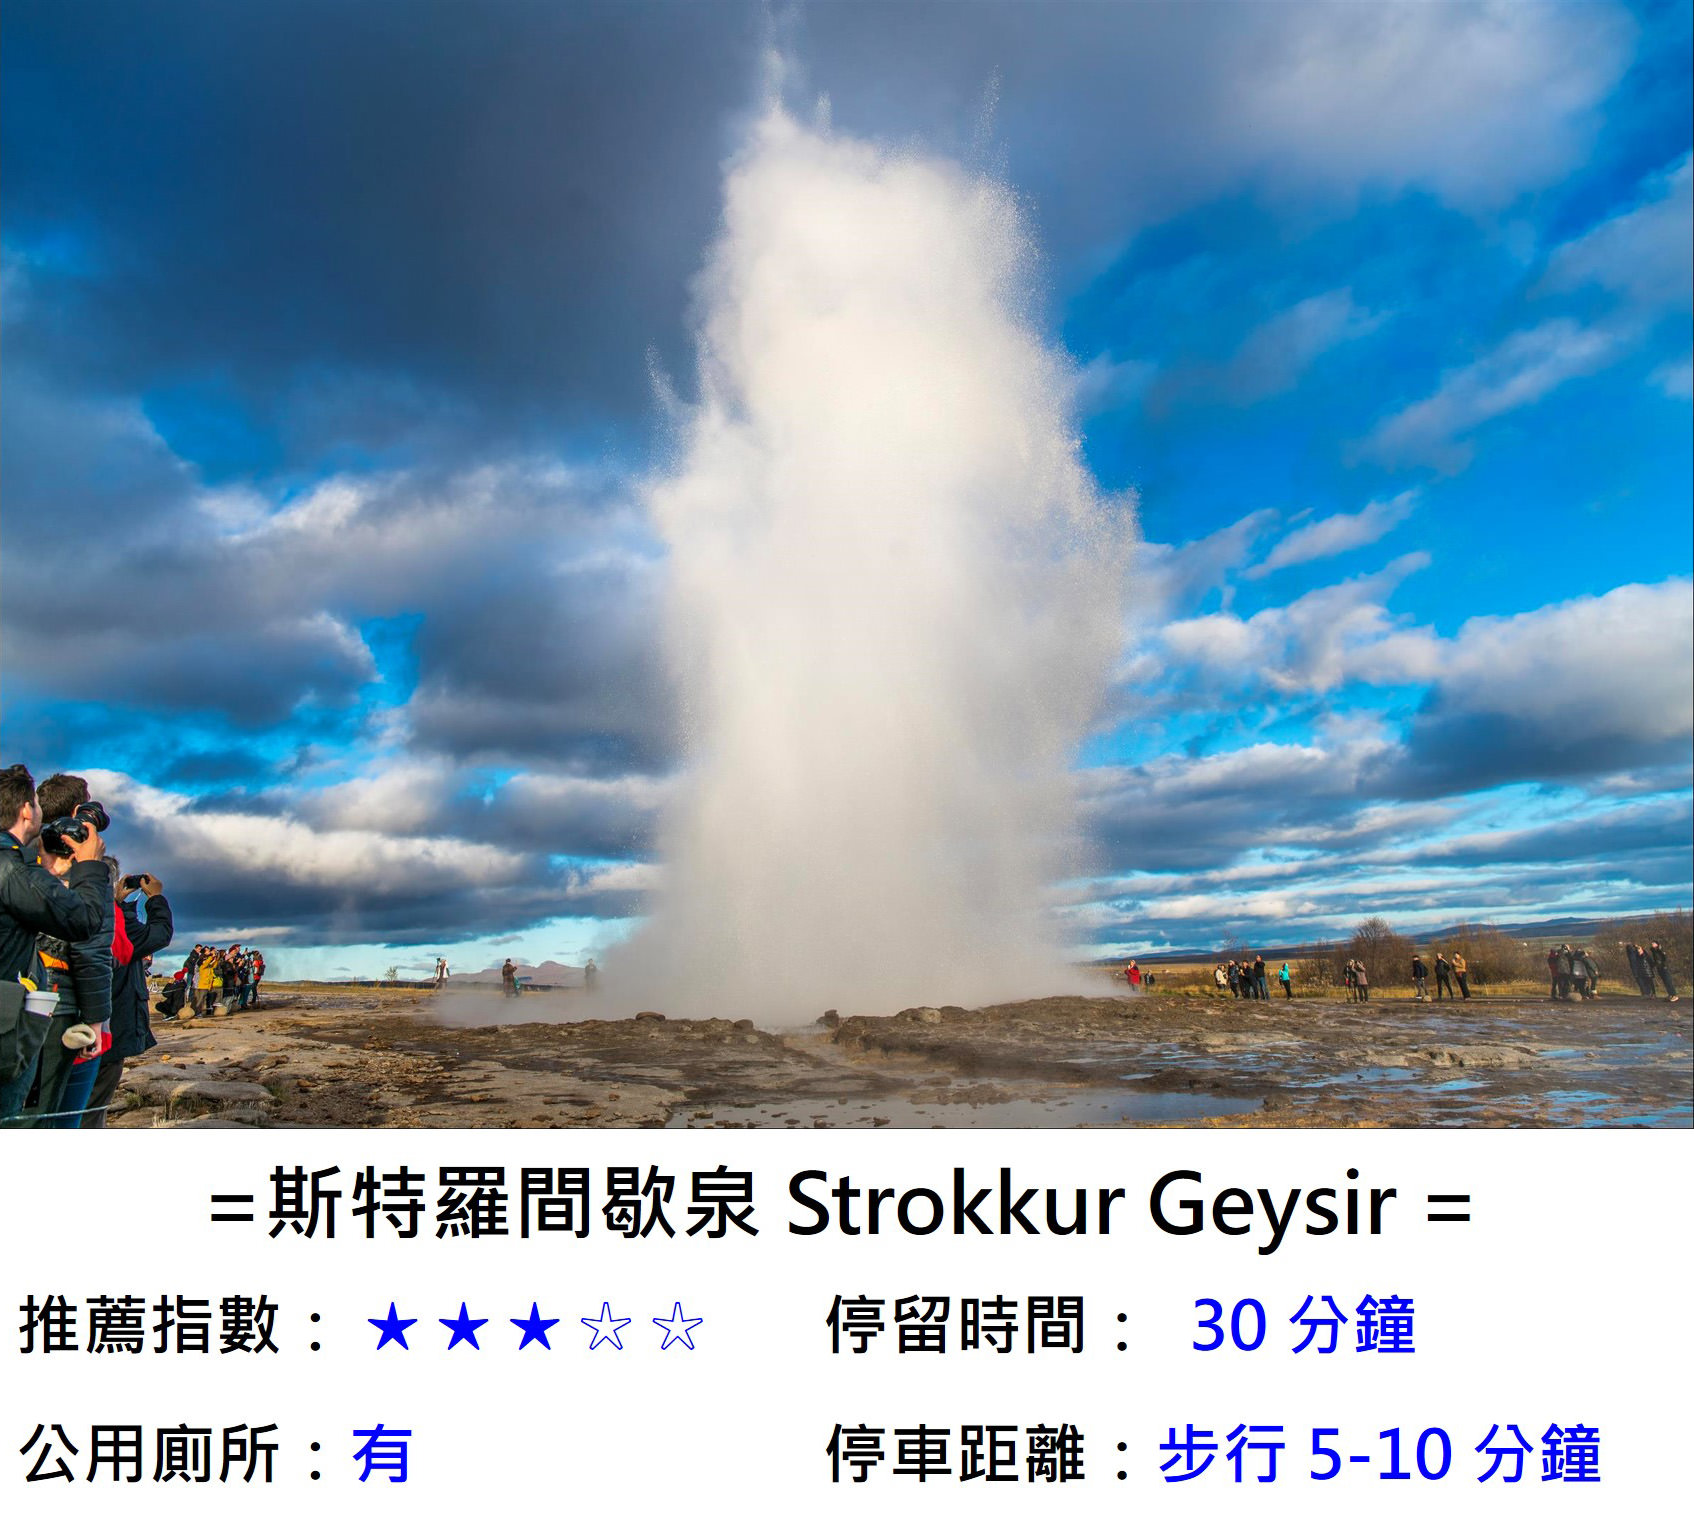 [冰島/規畫] 冰島一日遊行程推薦 , 金圈一日遊 , 南部二大瀑布,藍湖溫泉